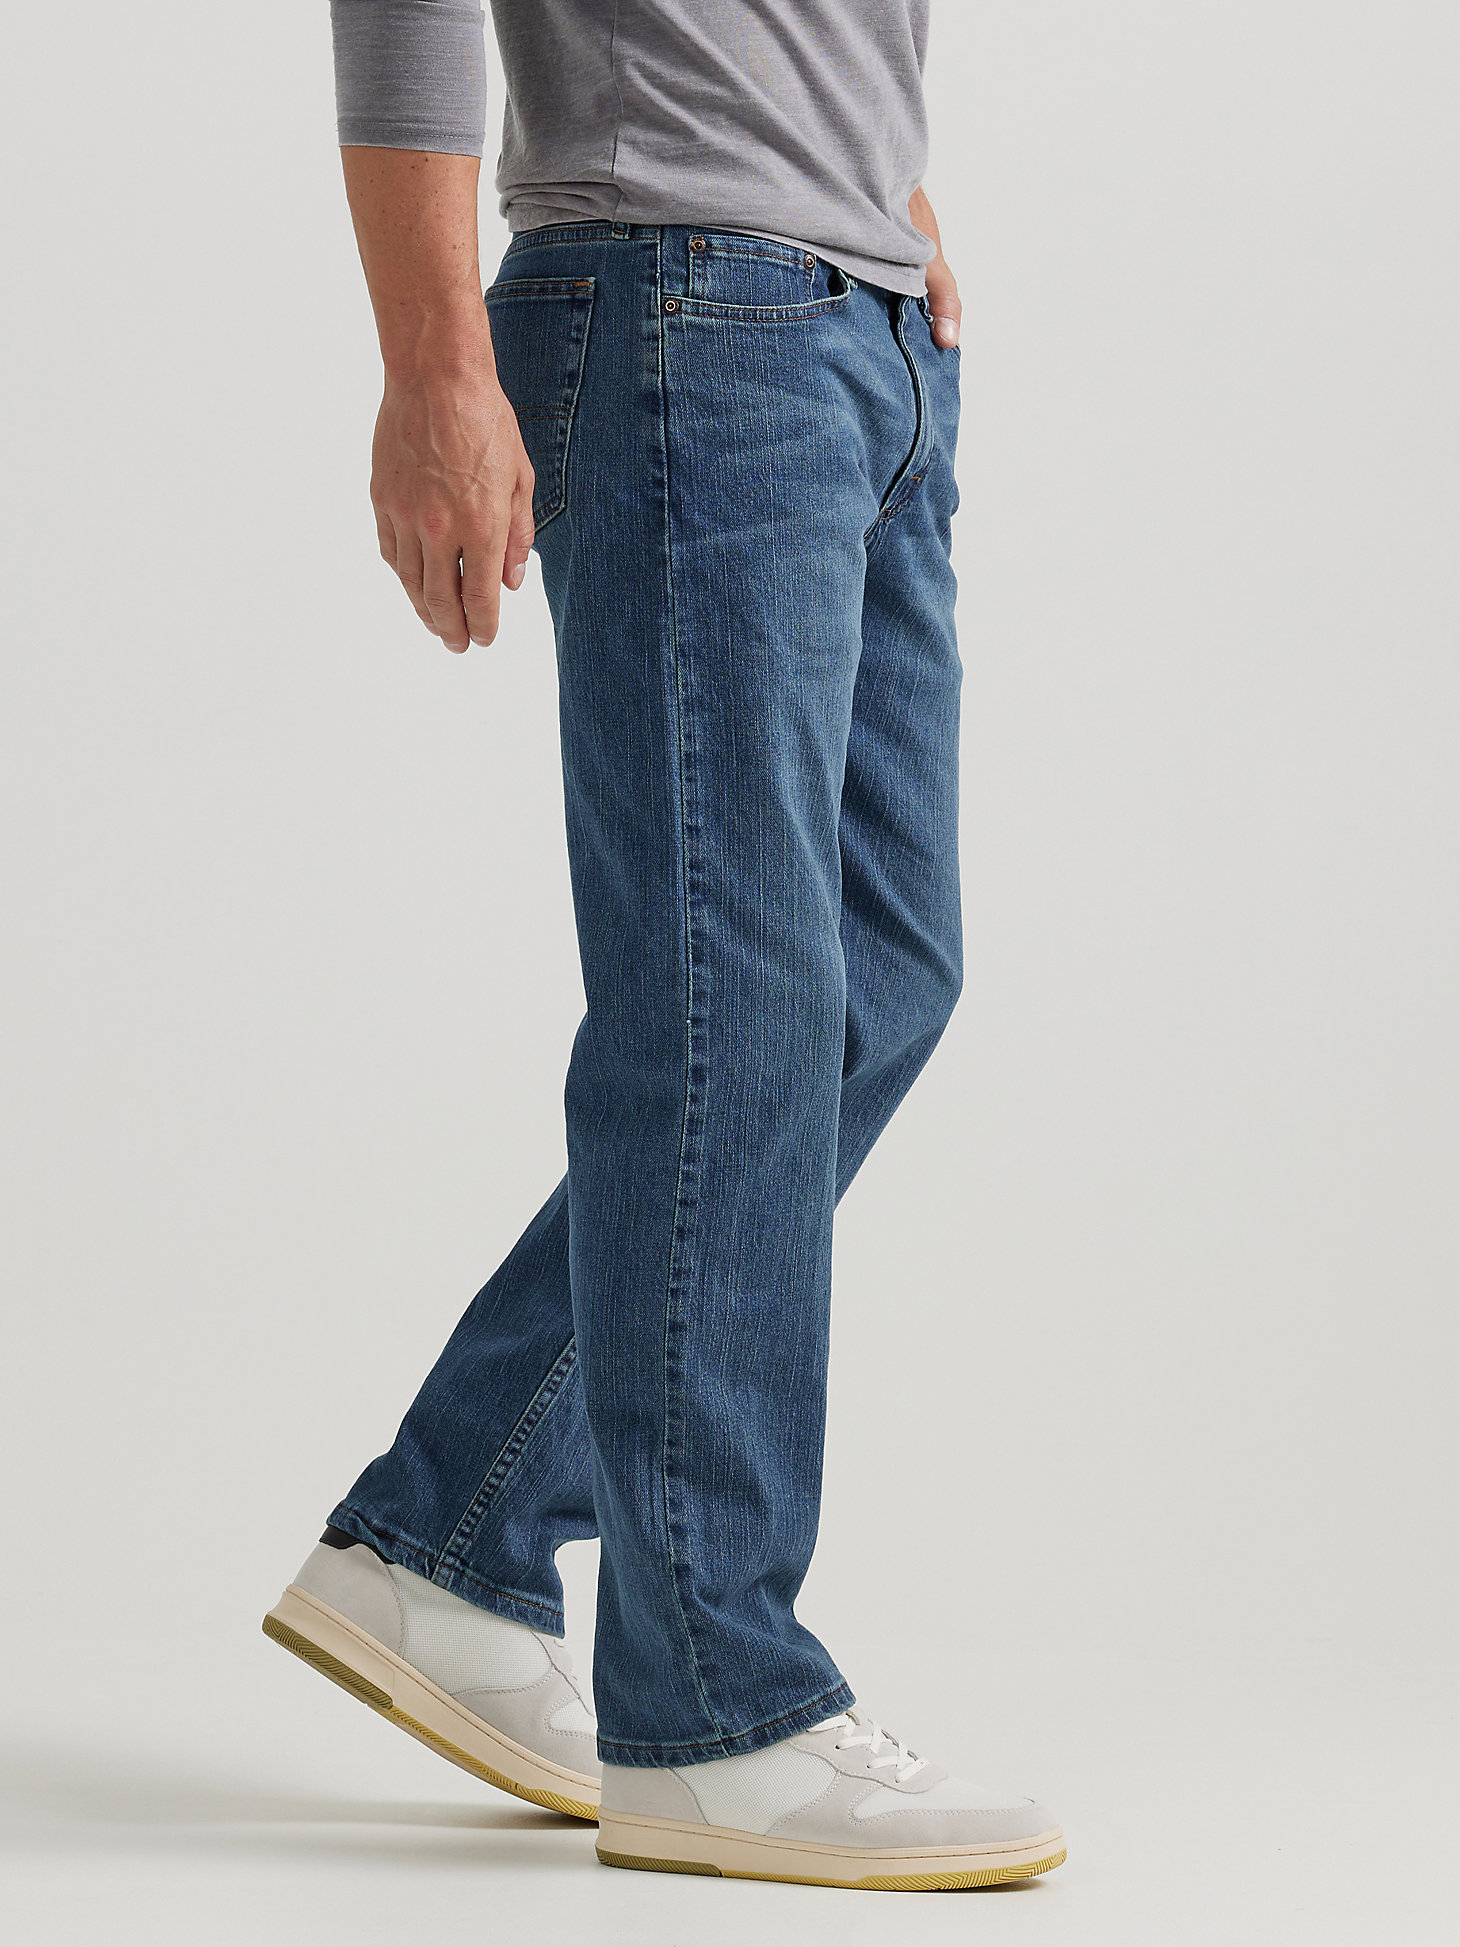 Men's Wrangler Authentics® Regular Fit Comfort Waist Jean in Blue Ocean alternative view 3